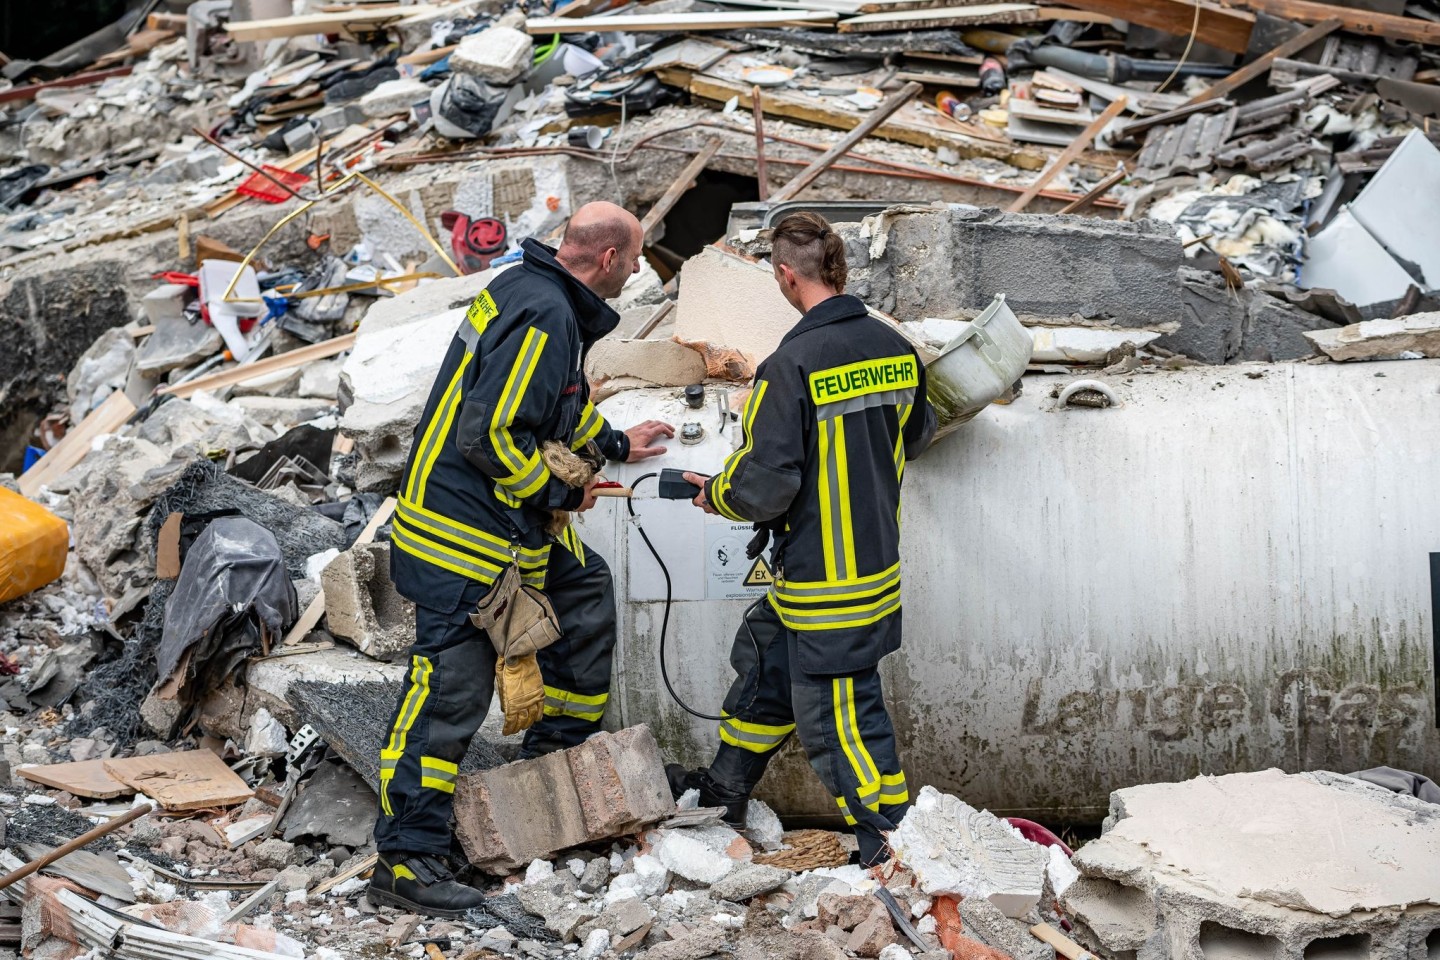 Feuerwehrleute machen zwischen den Trümmern eine Messung an einem Gastank.